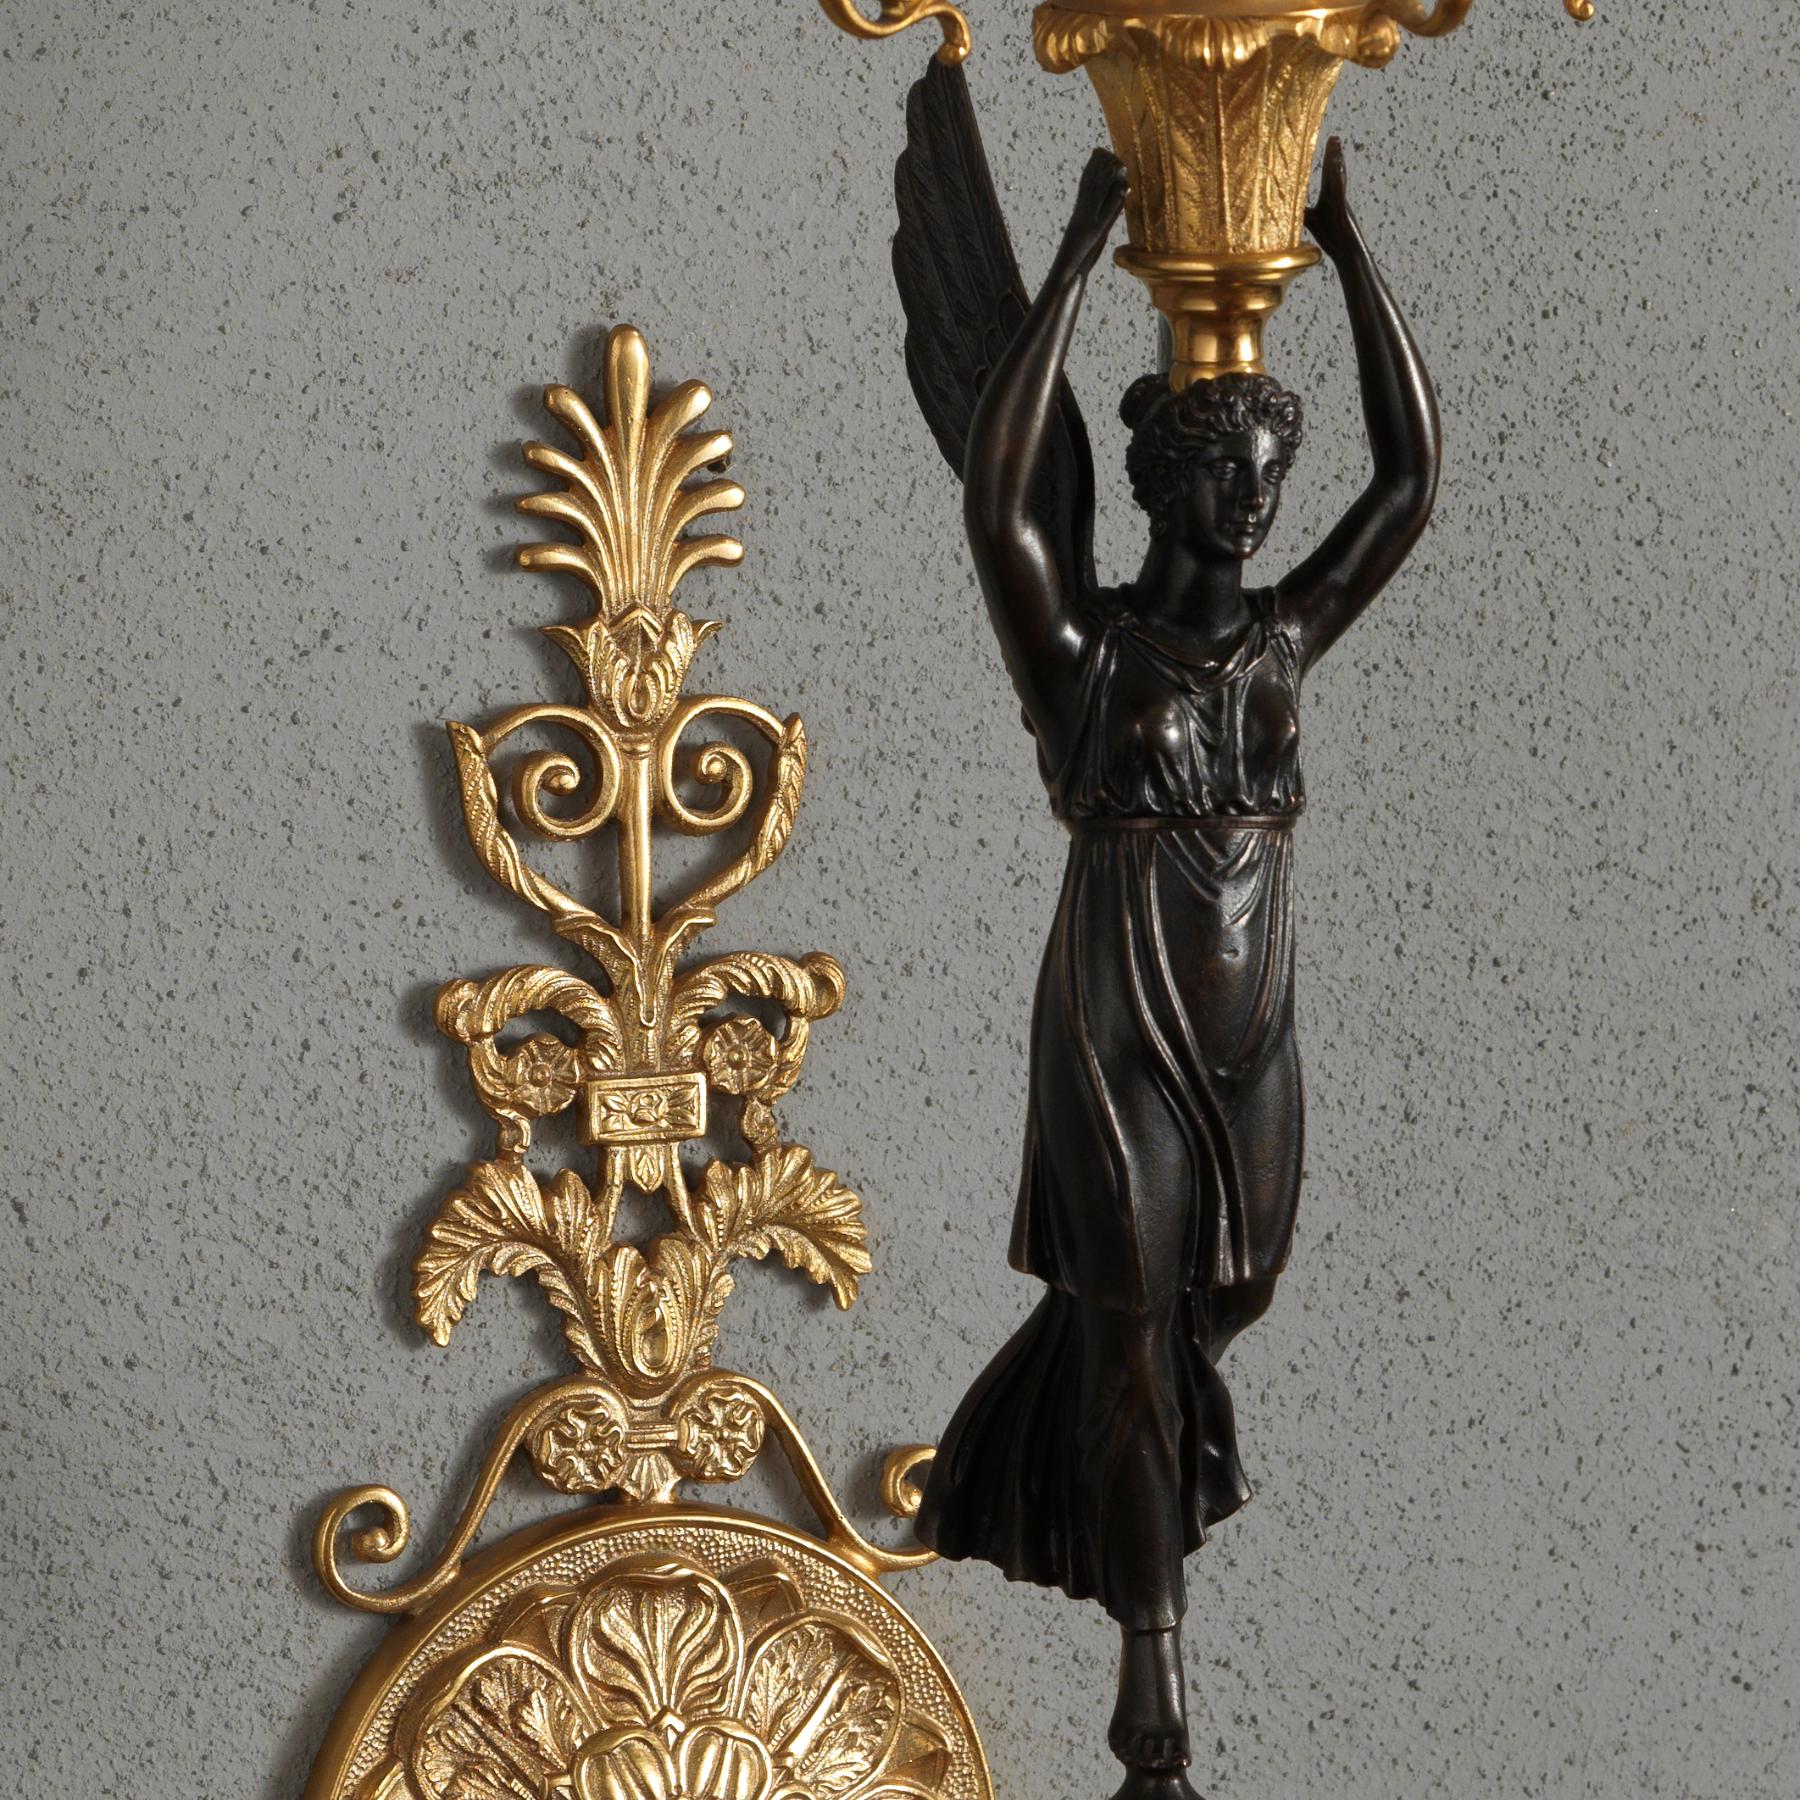 Dieser Wandleuchter im französischen Empire-Stil aus vergoldeter und brünierter Bronze ist ein elegantes Beispiel für eine figurale Wandleuchte, die eine geflügelte Victory zeigt, die auf einer kleinen runden Kugel aus vergoldeter Bronze sitzt. Die